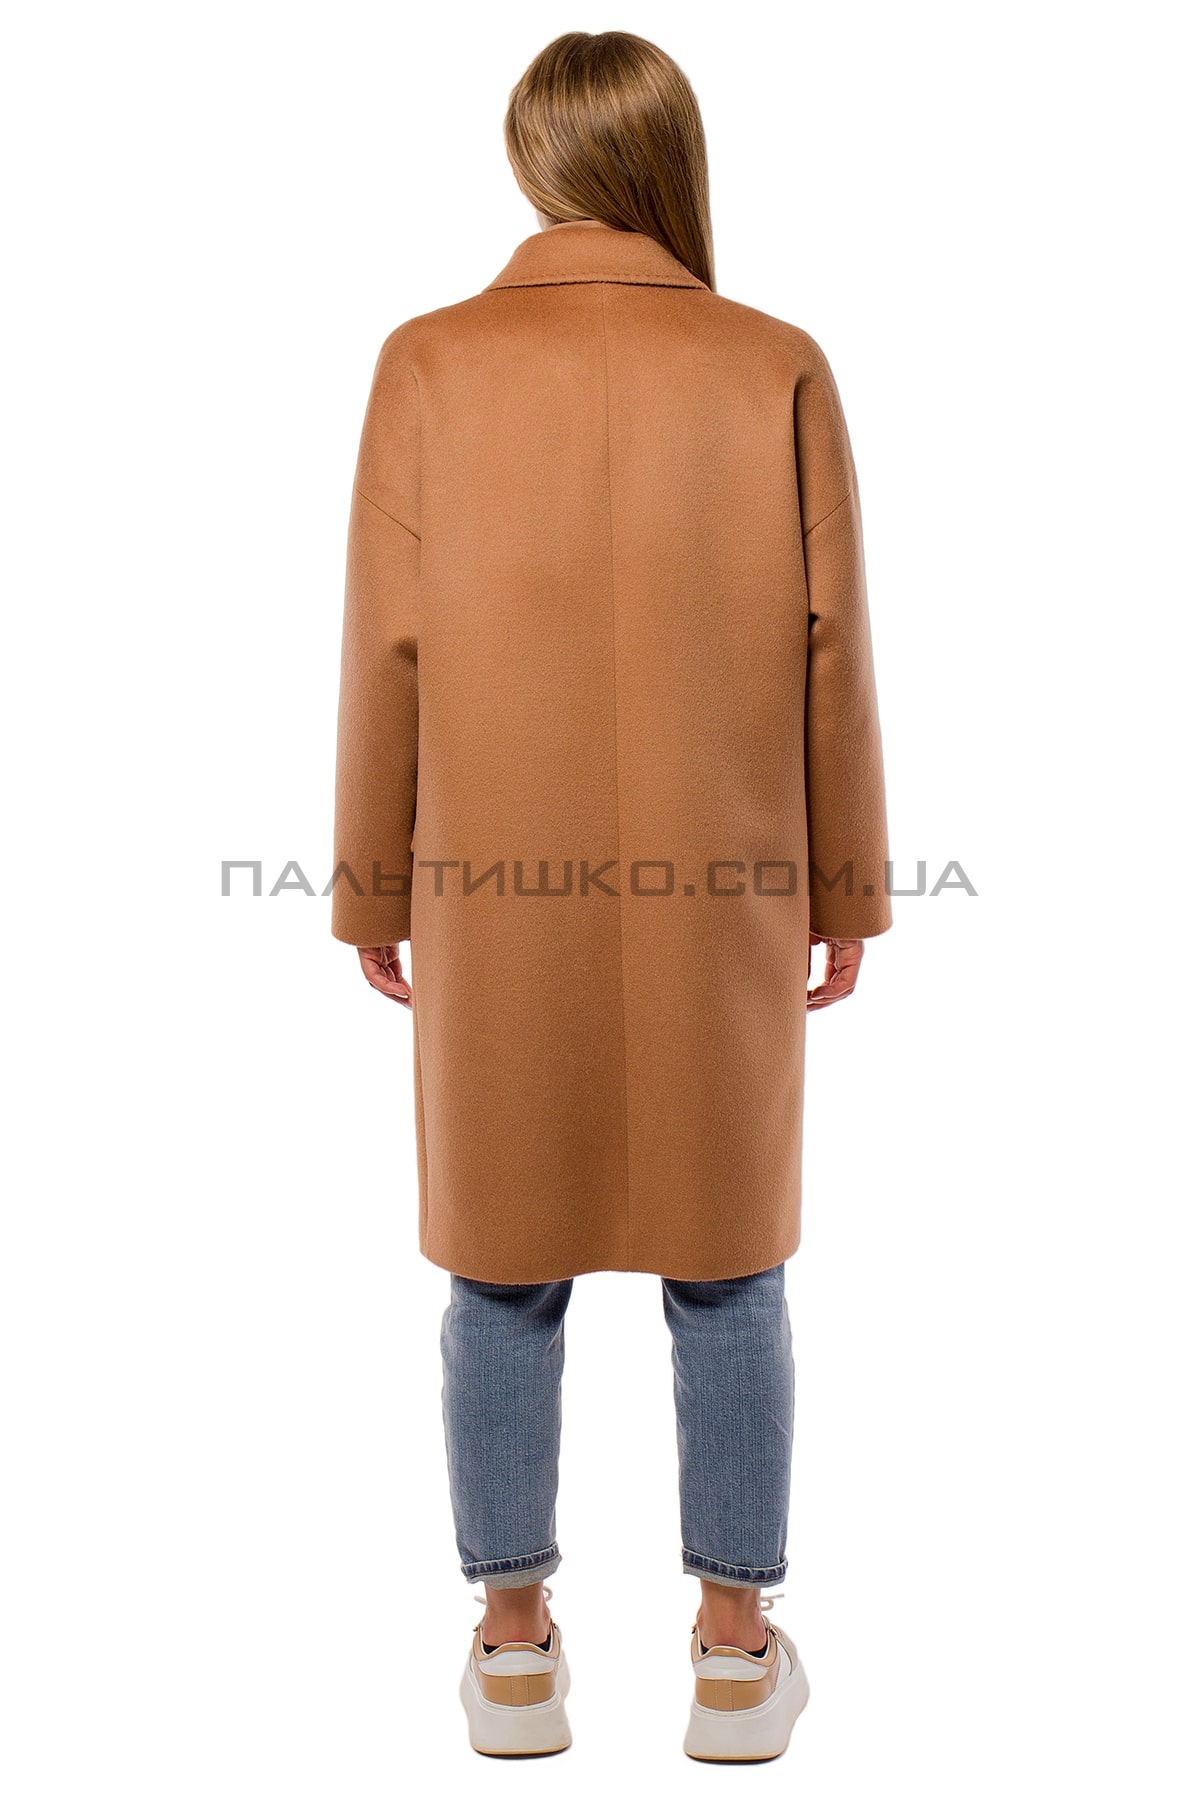  Пальто женское с карманами коричневое